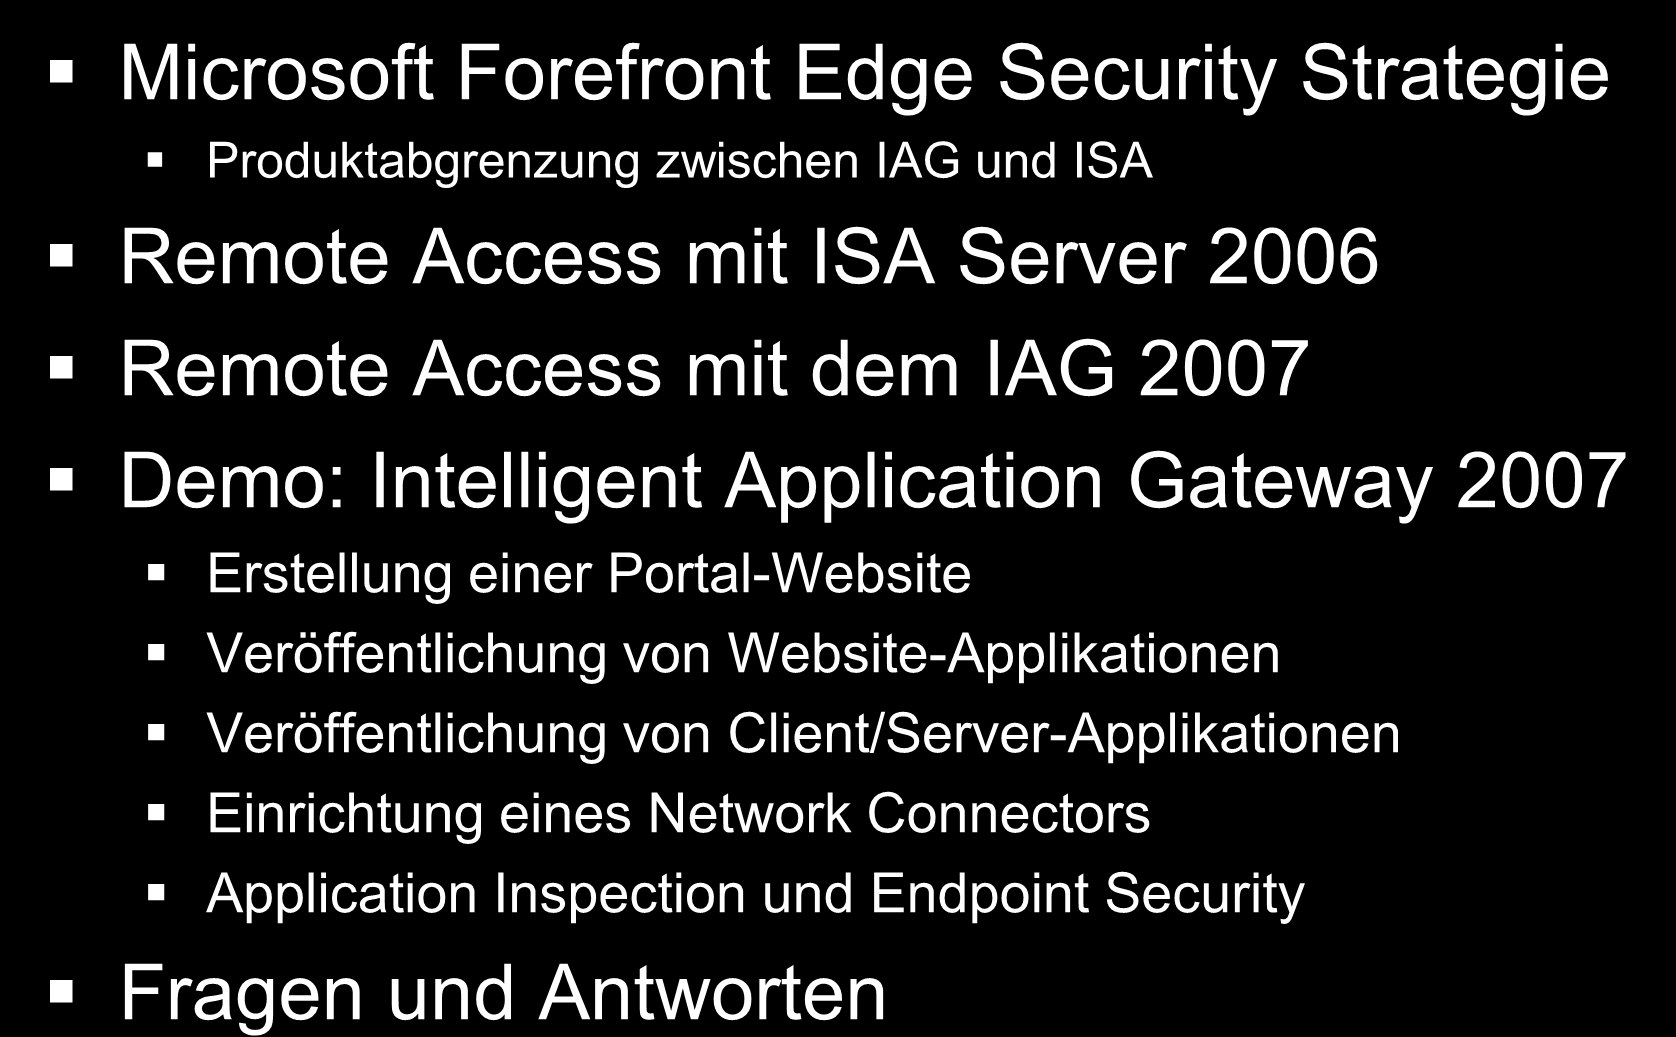 Agenda Microsoft Forefront Edge Security Strategie Produktabgrenzung zwischen IAG und ISA Remote Access mit ISA Server 2006 Remote Access mit dem IAG 2007 Demo: Intelligent Application Gateway 2007